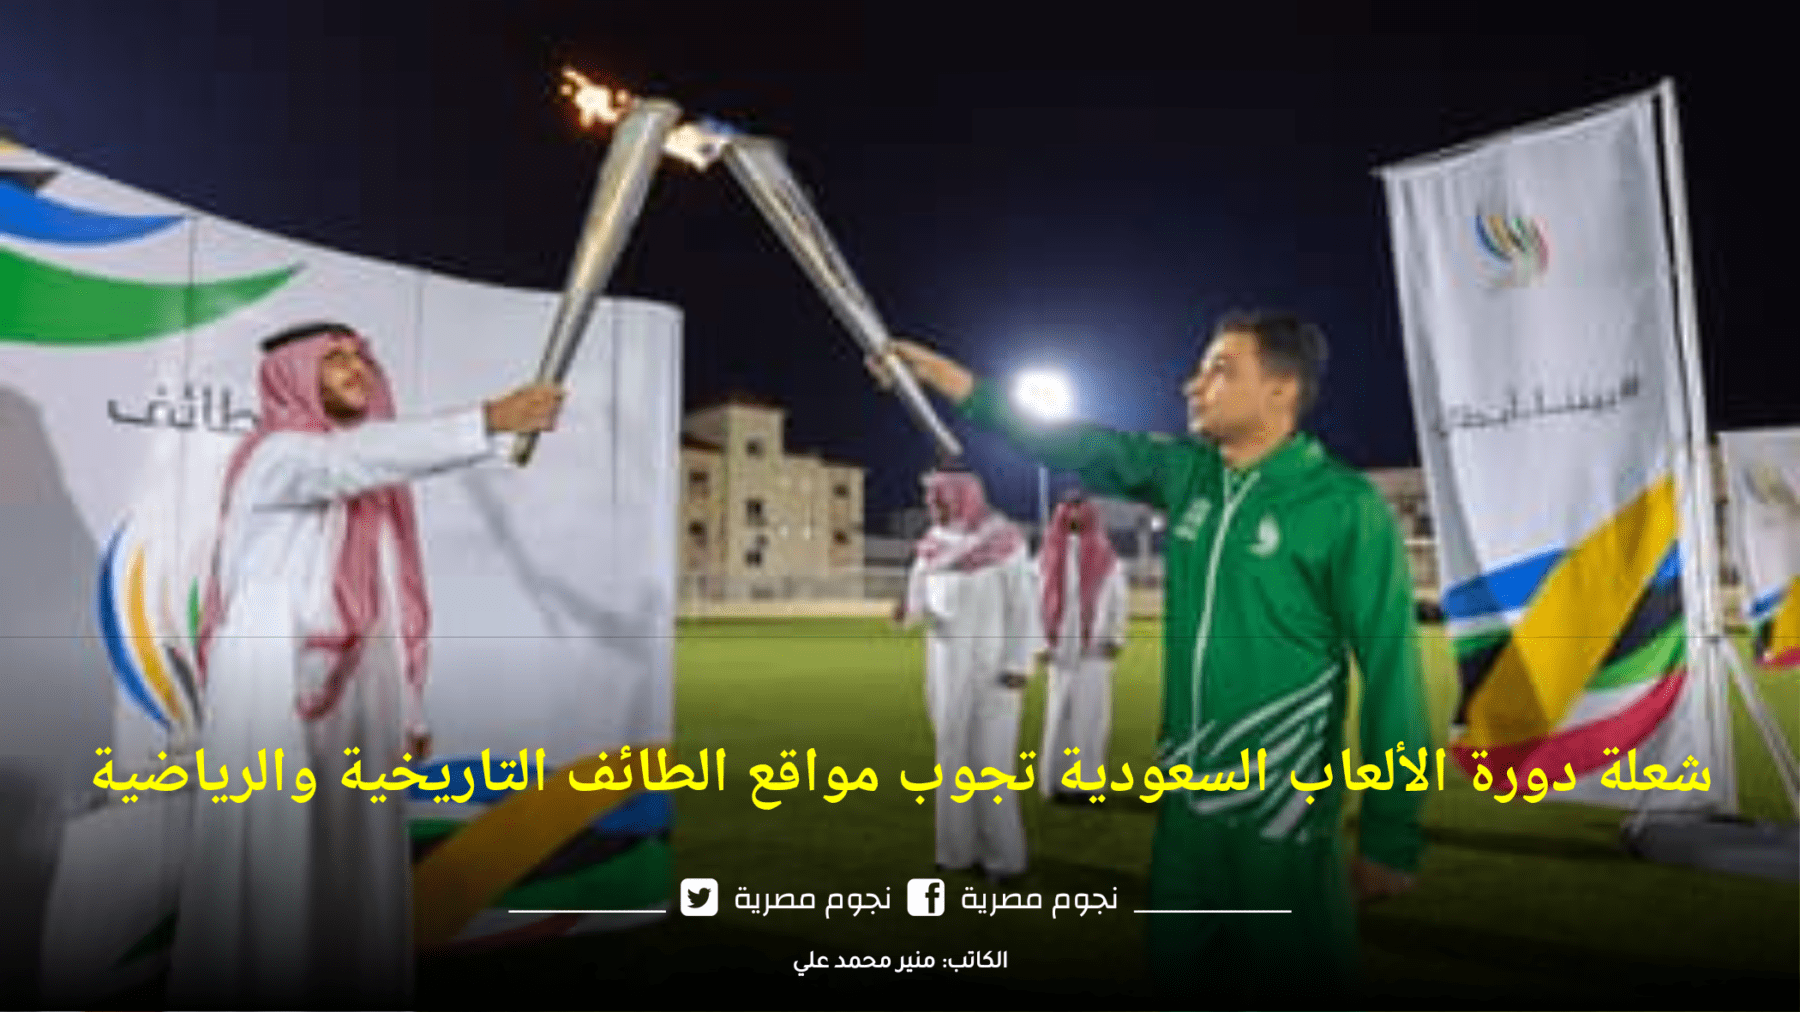 شعلة الألعاب السعودية تجوب مواقع الطائف التاريخية والرياضية